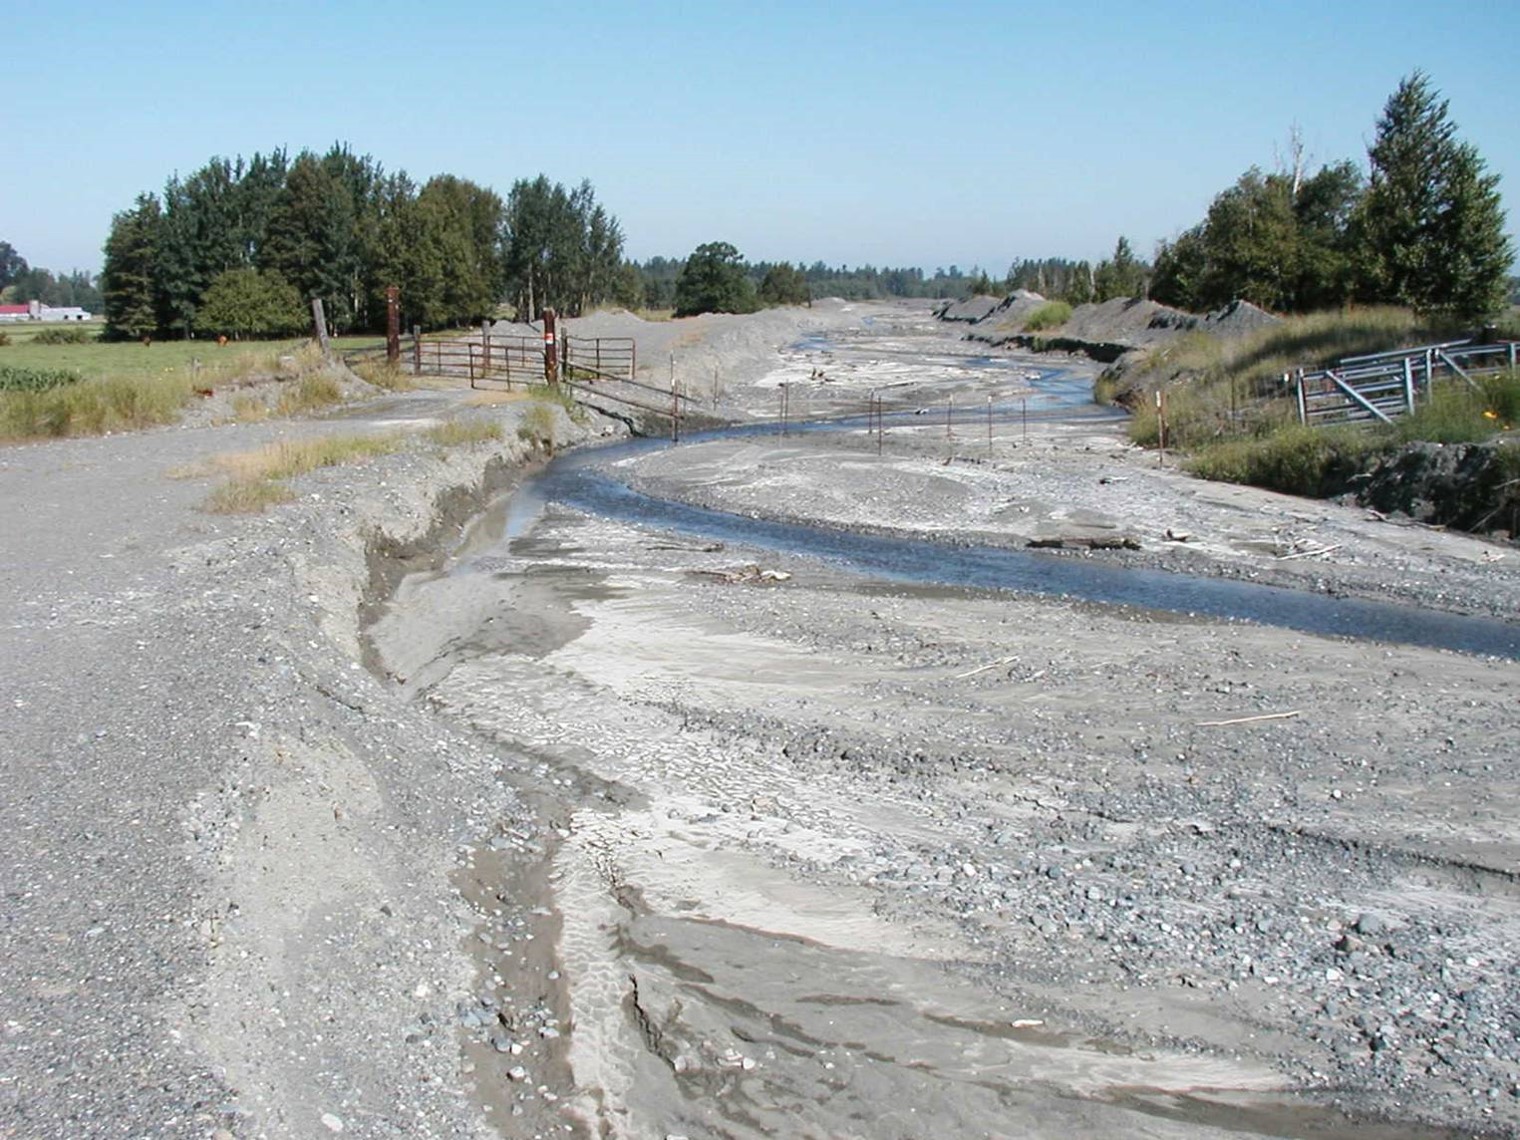 Exposed sediment in creekbed